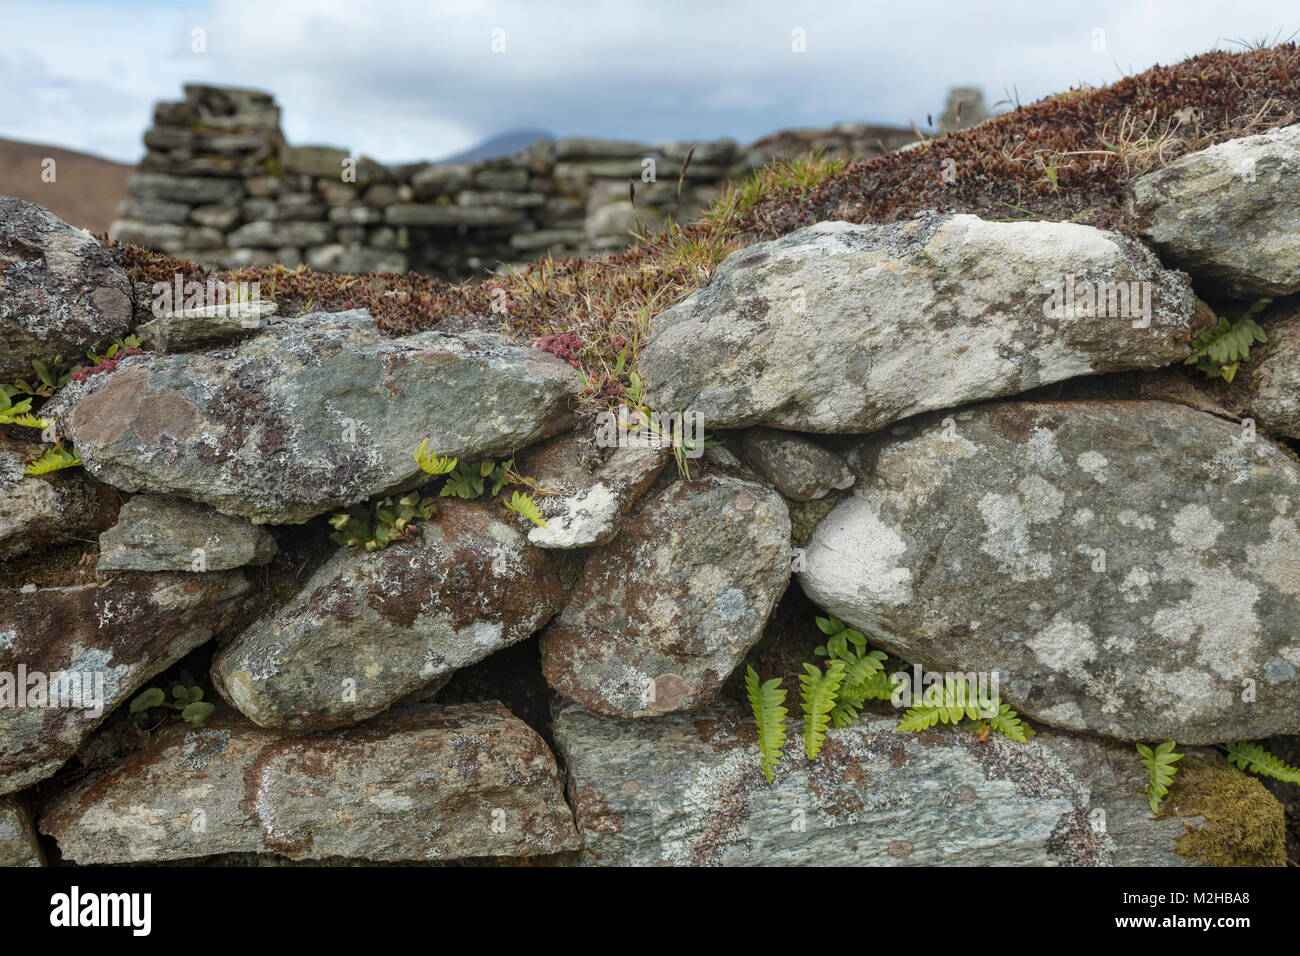 Los helechos crecen en un muro de piedra en la aldea desierta Slievemore, Achill Island, en el condado de Mayo, Irlanda. Foto de stock